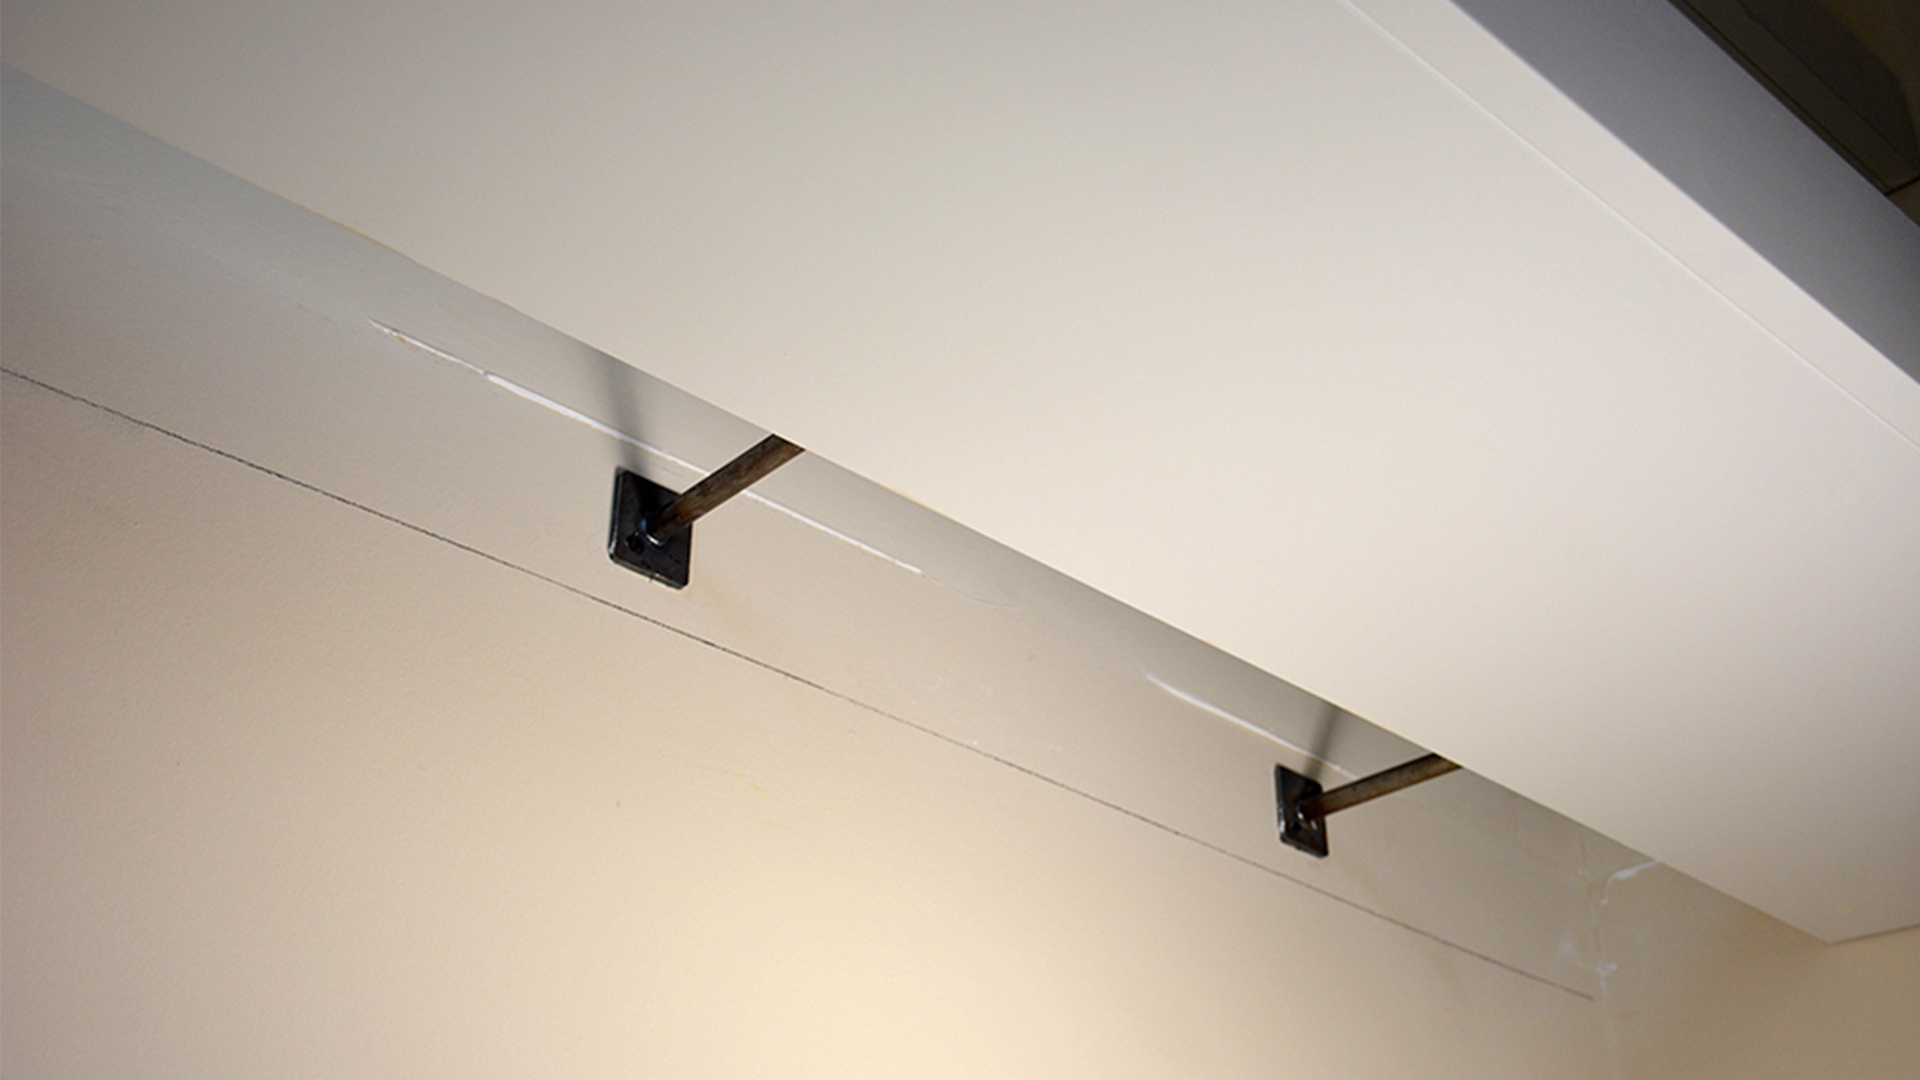 Sliding MDF/White Veneer Shelf Box over Floating Shelf Support Rods